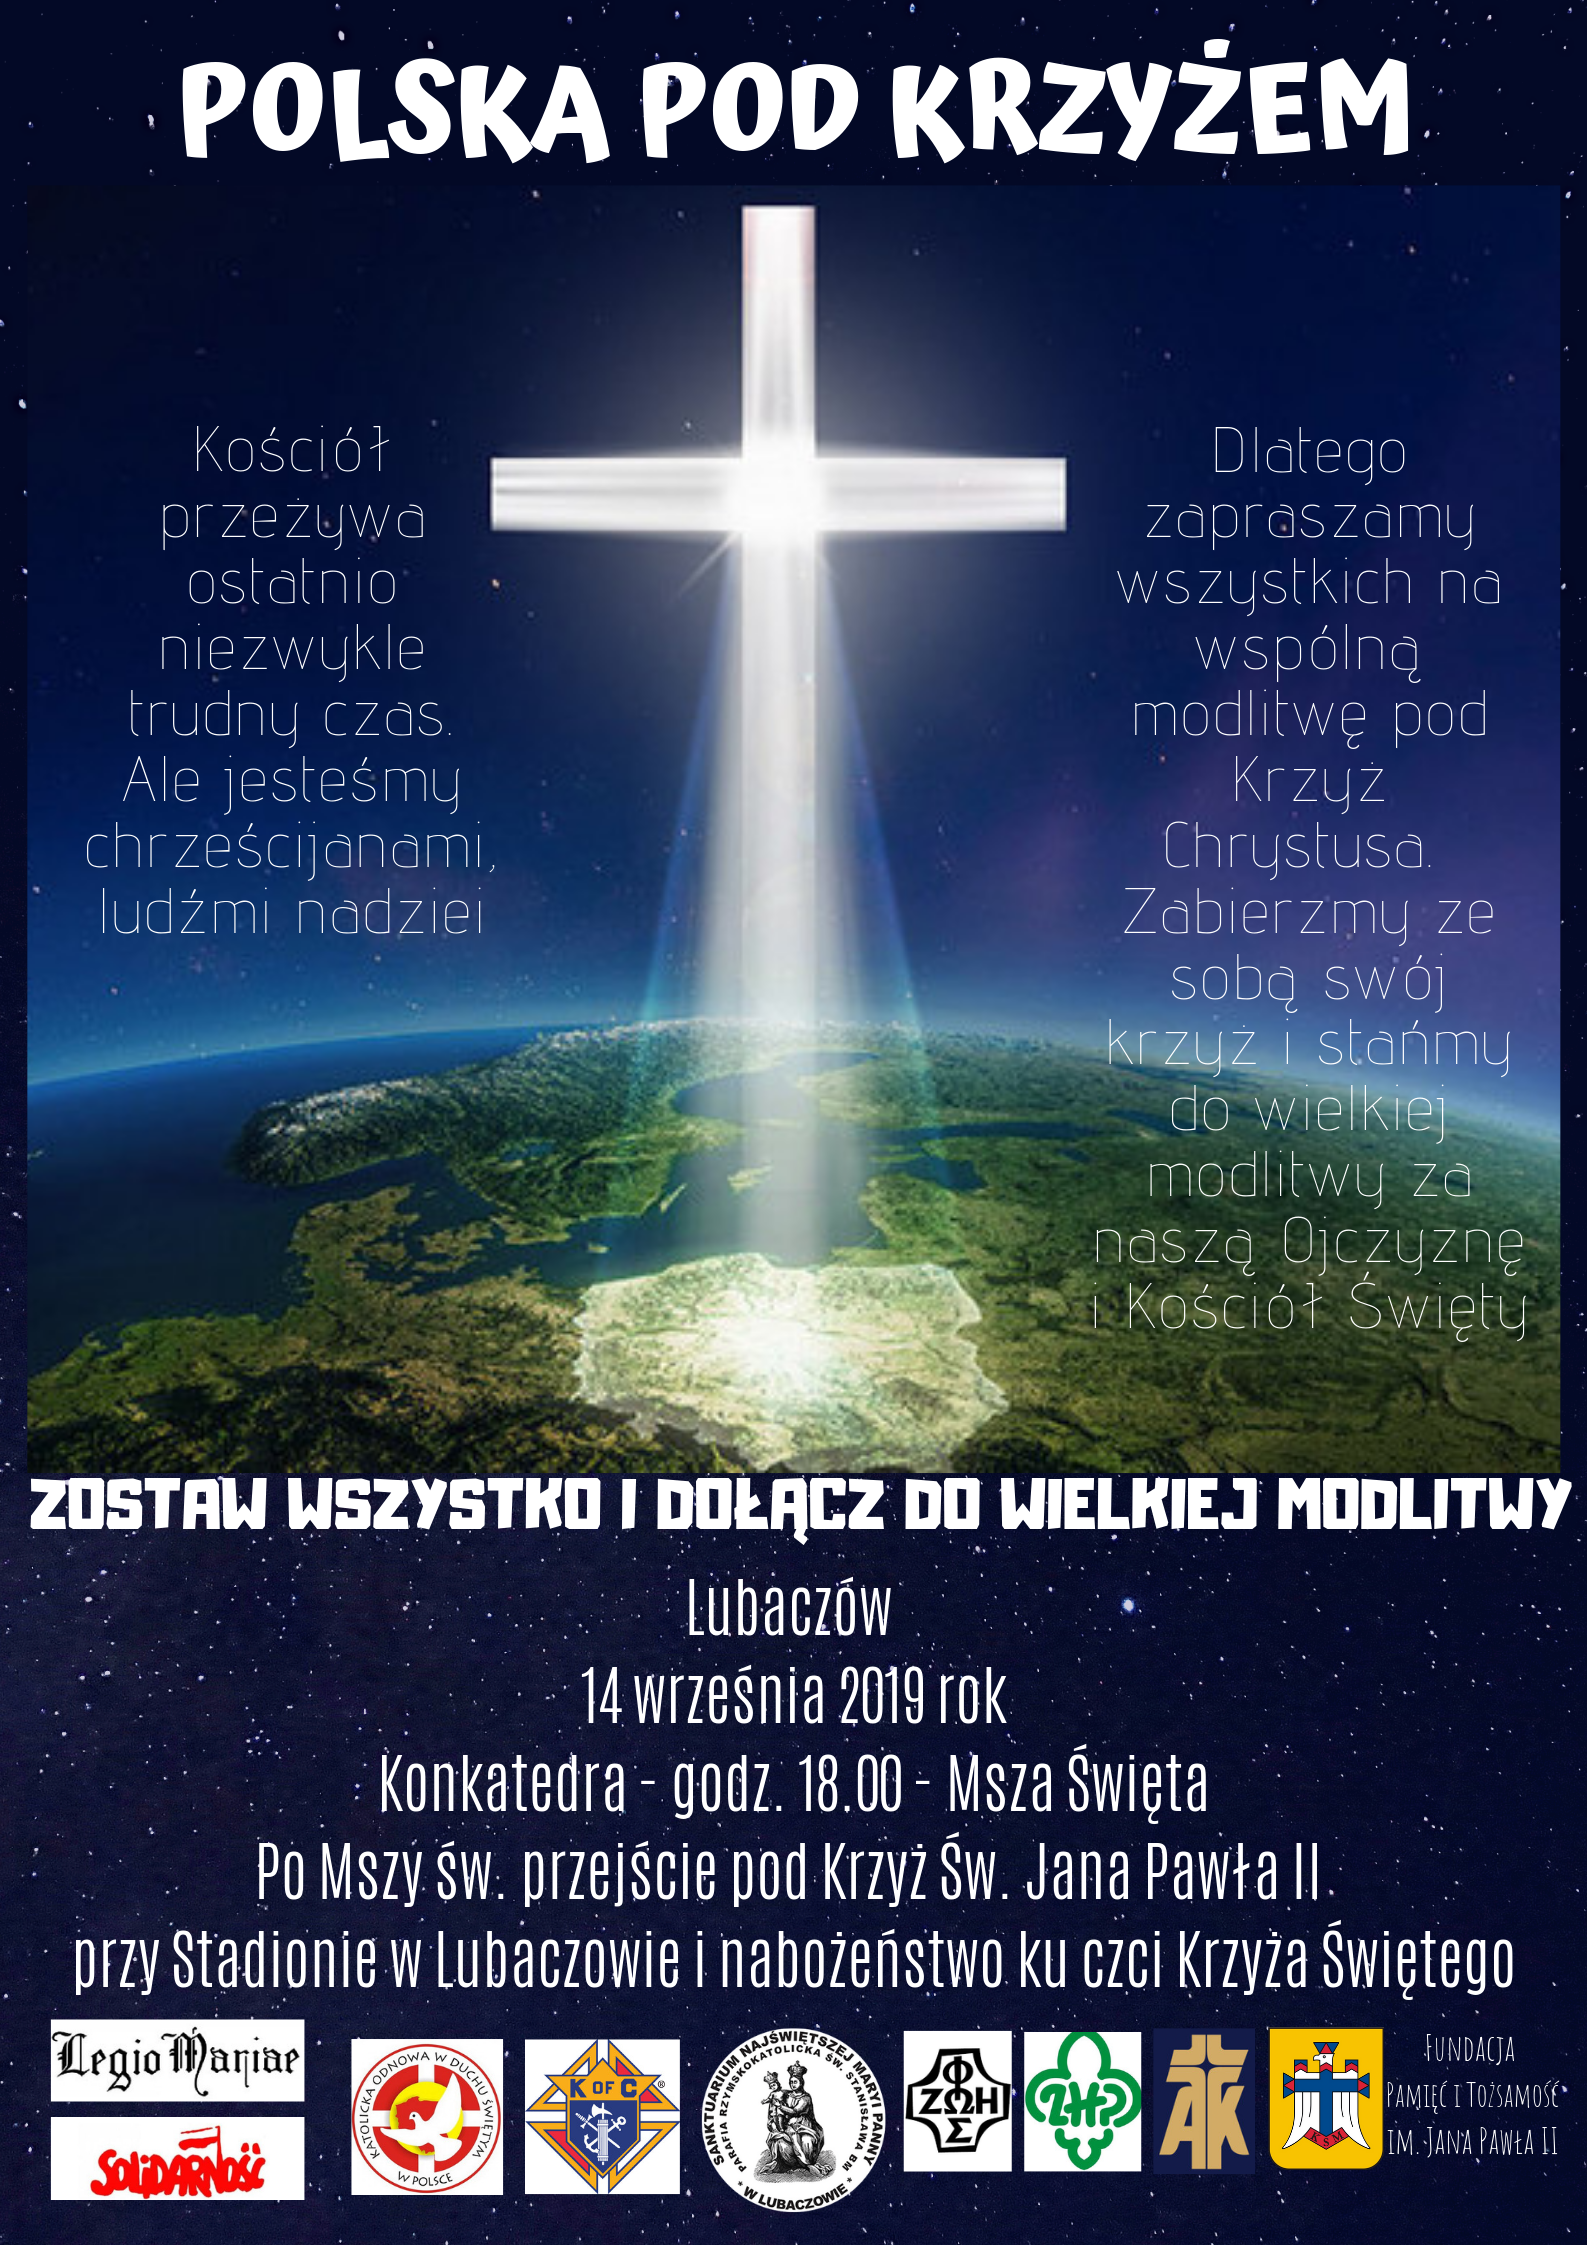 POLSKA POD KRZYŻEM. W sobotę 14.09. spotkanie modlitewne pod “Krzyżem Papieskim” w Lubaczowie.